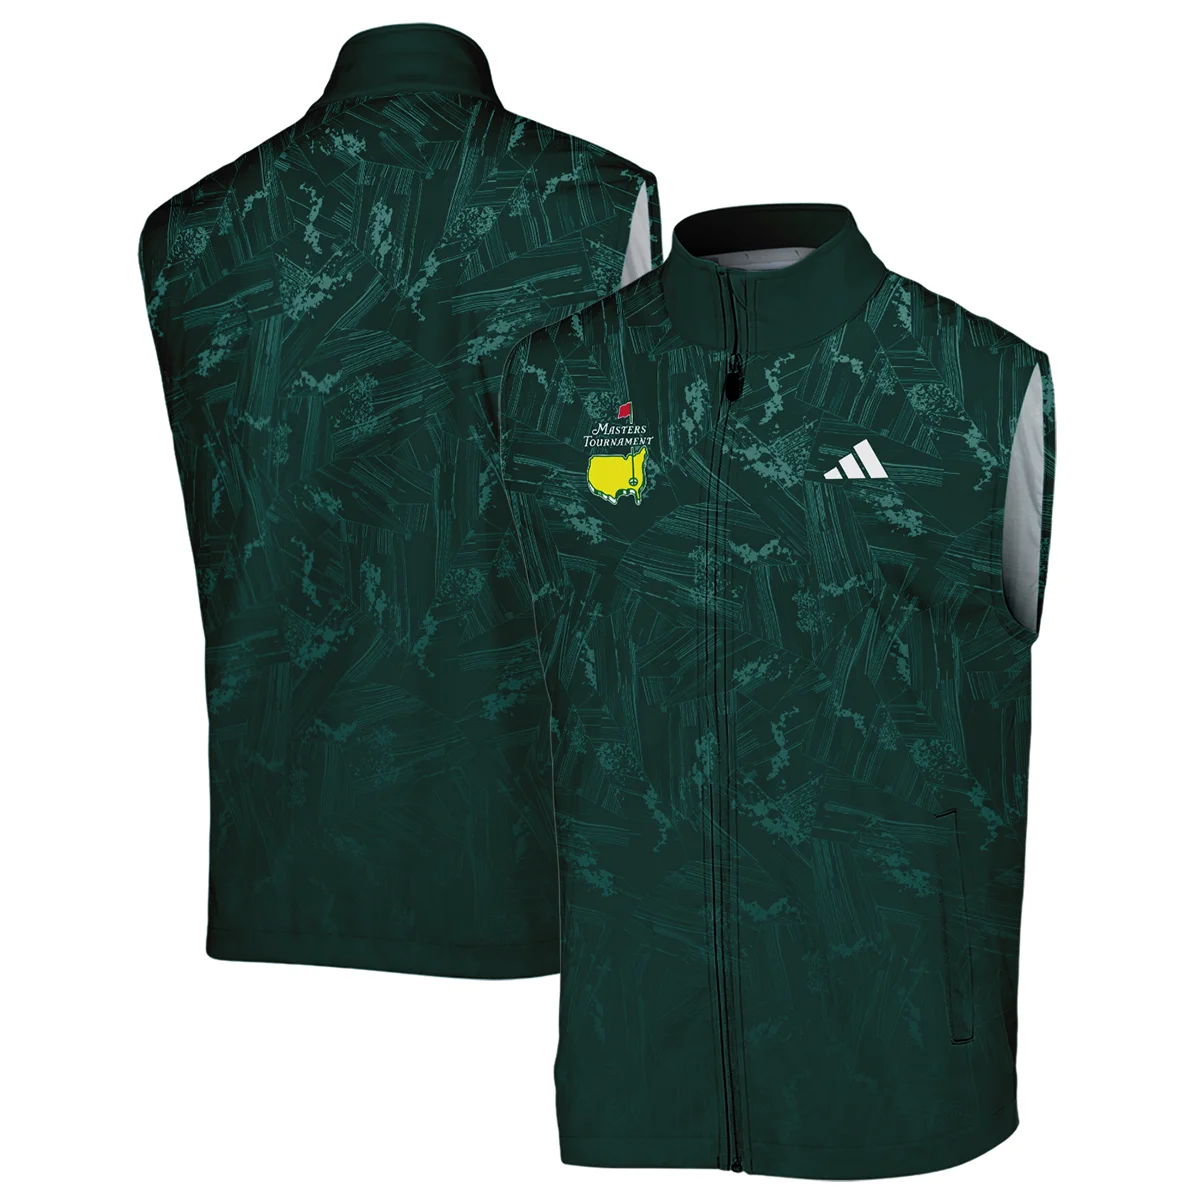 Dark Green Background Masters Tournament Adidas Sleeveless Jacket Style Classic Sleeveless Jacket